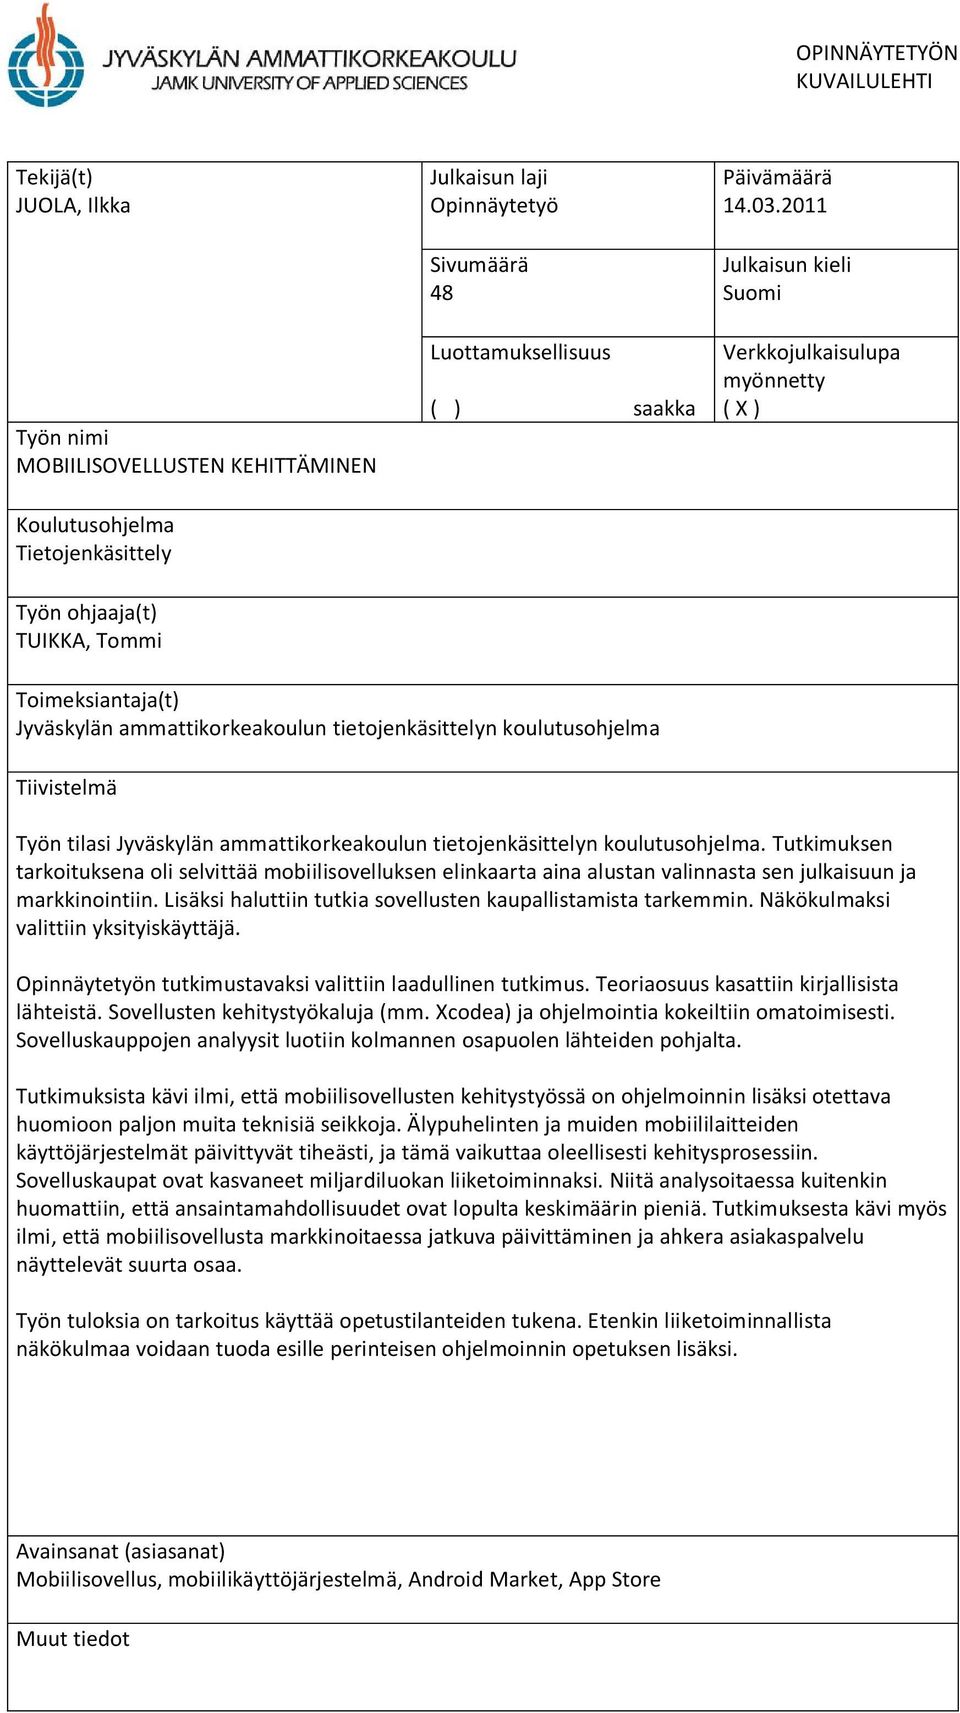 2011 Julkaisun kieli Suomi Verkkojulkaisulupa myönnetty ( X ) Työn ohjaaja(t) TUIKKA, Tommi Toimeksiantaja(t) Jyväskylän ammattikorkeakoulun tietojenkäsittelyn koulutusohjelma Tiivistelmä Työn tilasi